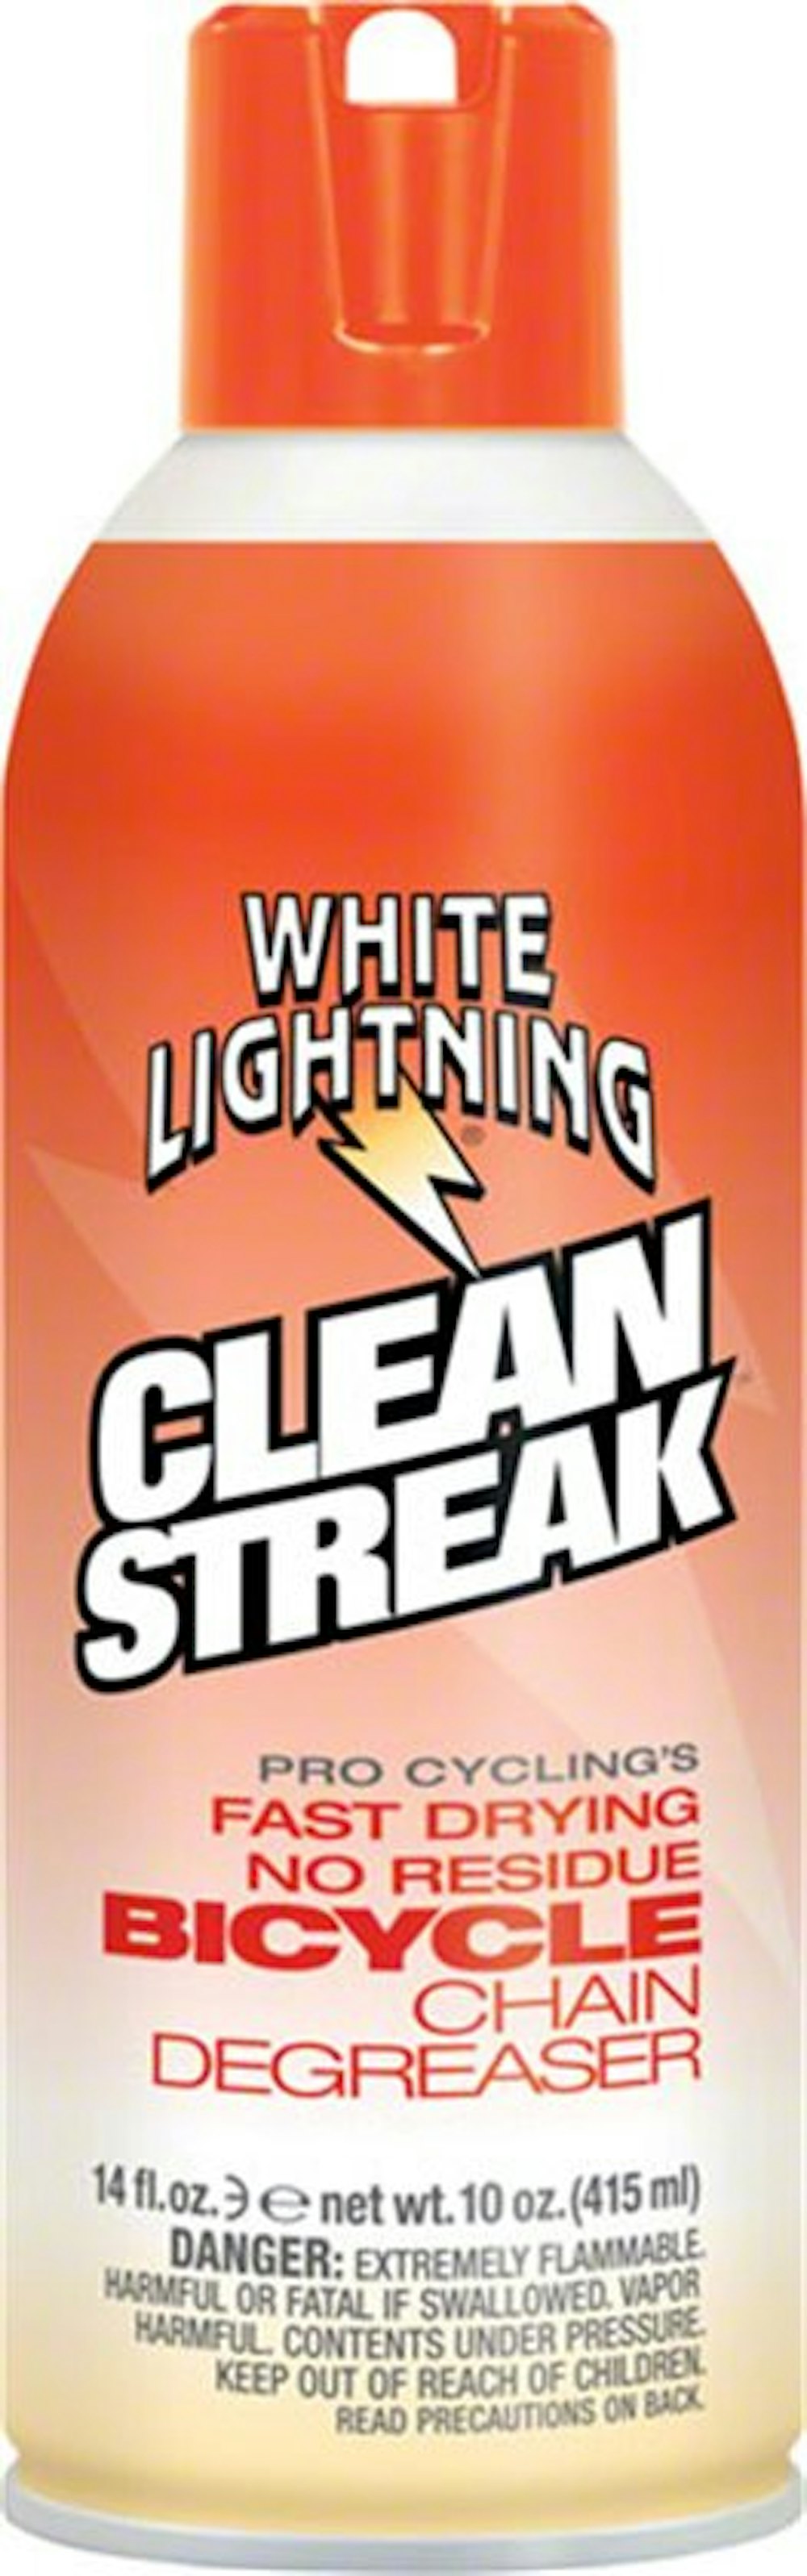 White Lightning Clean Streak Degreaser